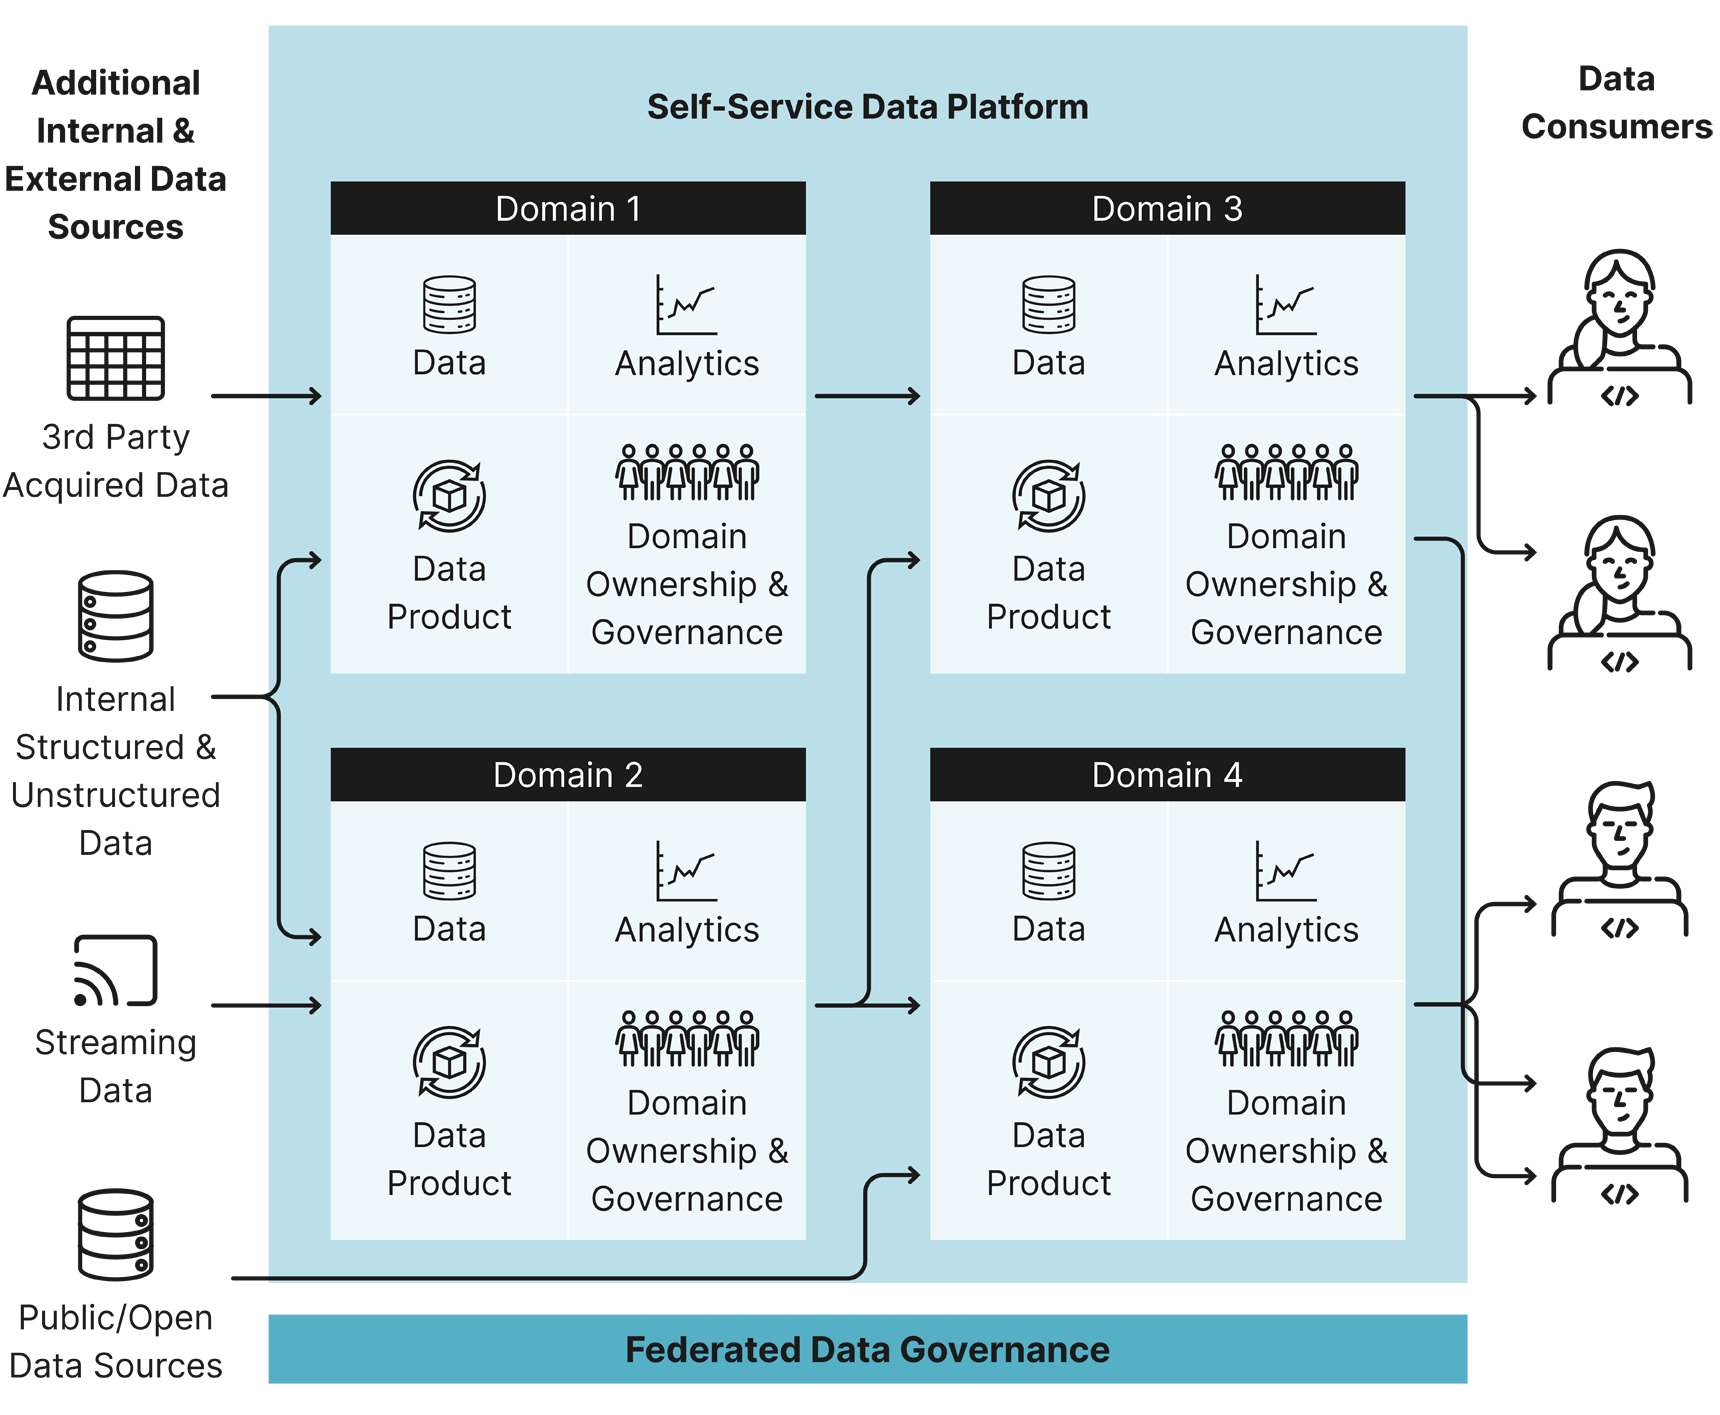 An overview of a self-service data platform